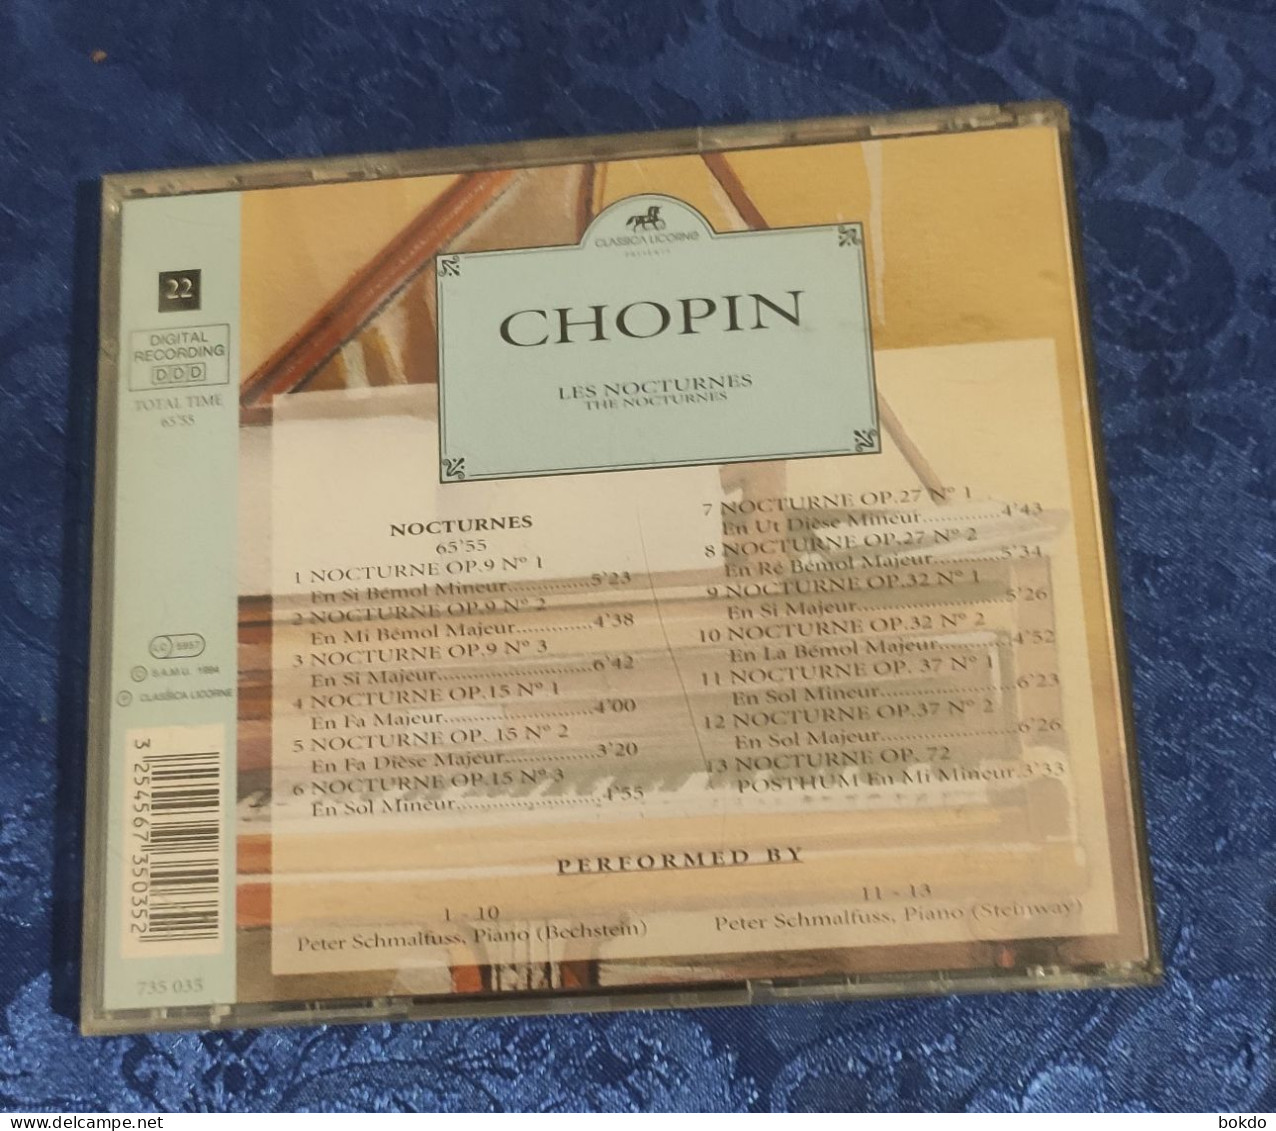 CHOPIN - Les Nocturnes - Clásica